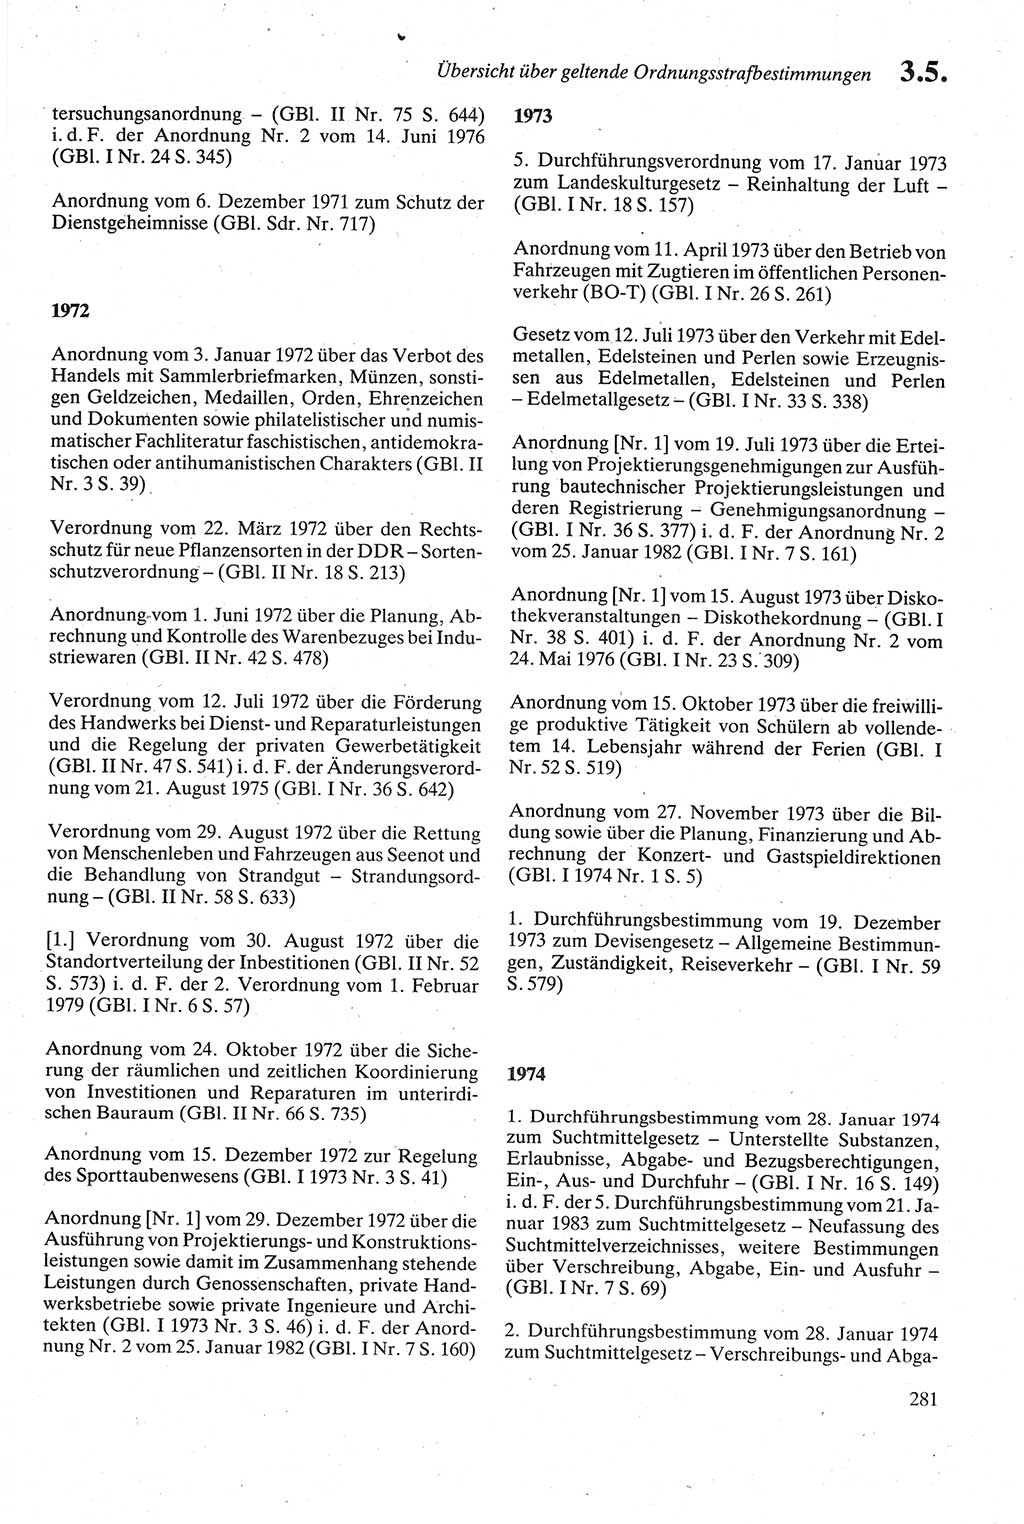 Strafgesetzbuch (StGB) der Deutschen Demokratischen Republik (DDR) sowie angrenzende Gesetze und Bestimmungen 1979, Seite 281 (StGB DDR Ges. Best. 1979, S. 281)